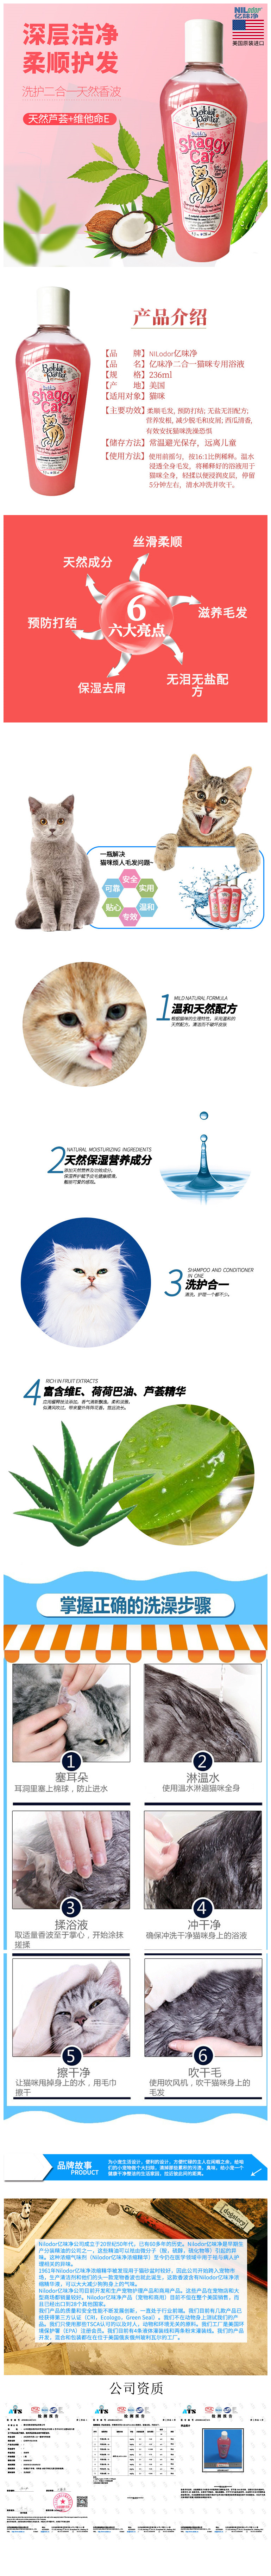 猫浴液长图.jpg